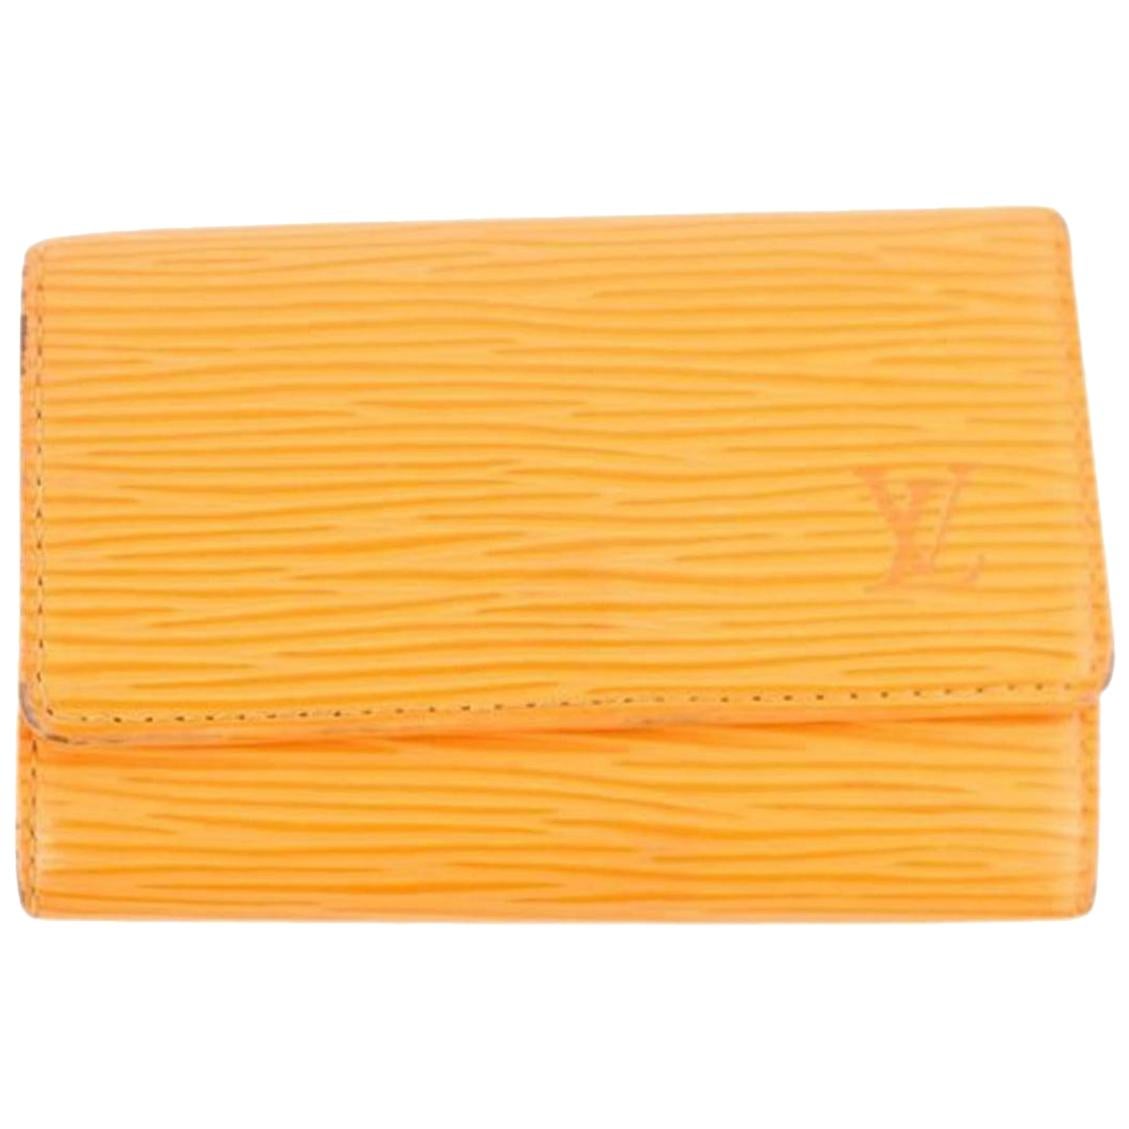 Louis Vuitton Orange Epi Leather Multicles 6 Key Holder 3le107 Wallet For Sale